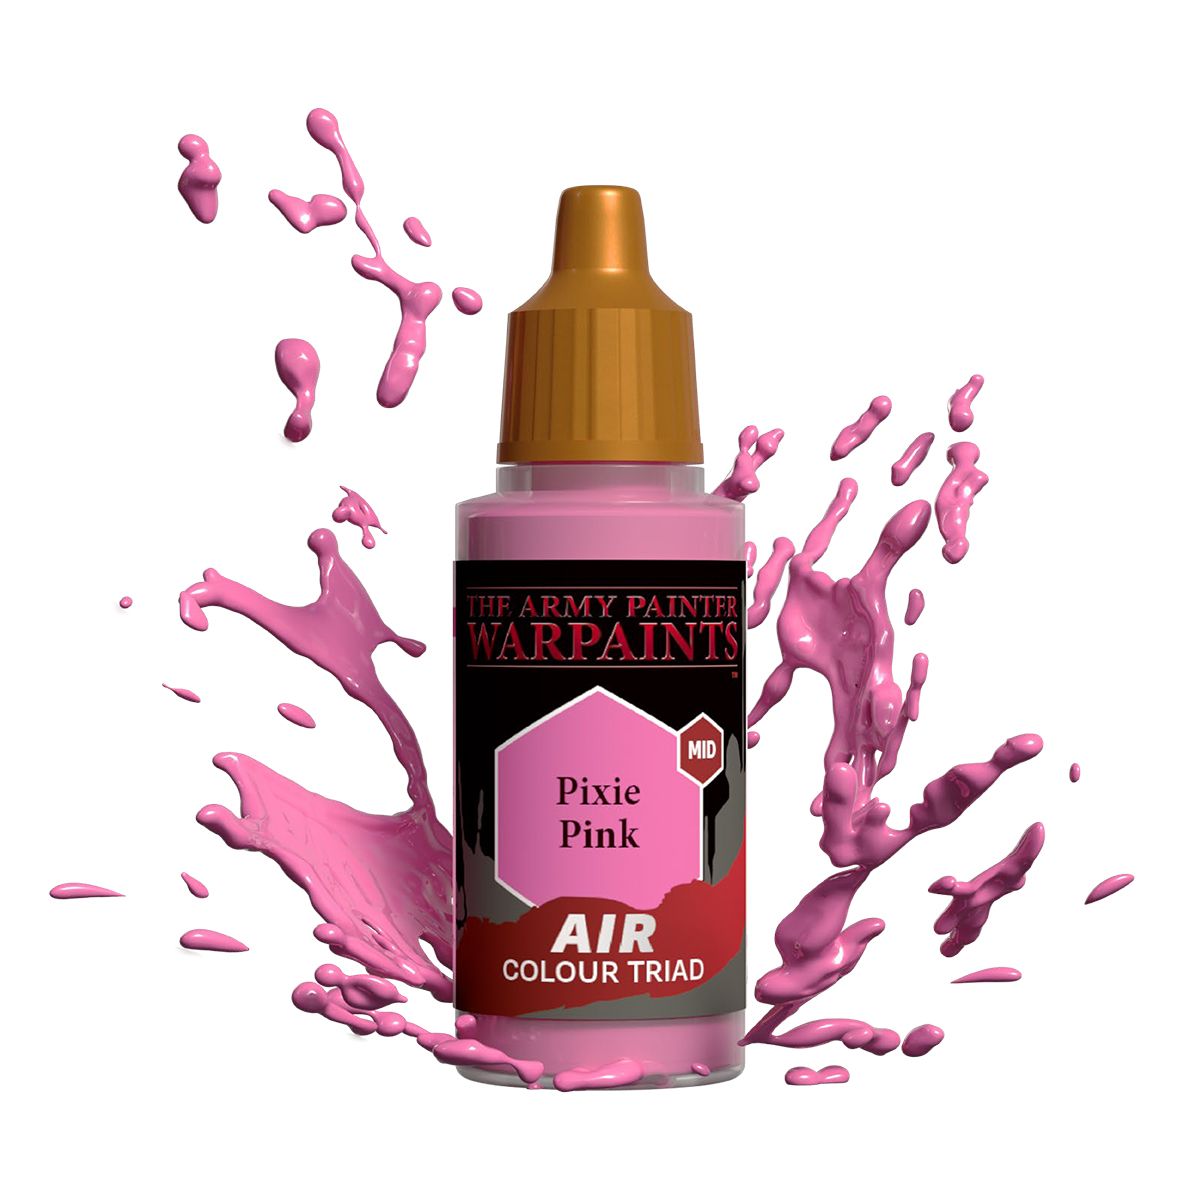 Warpaints Air : Pixie Pink